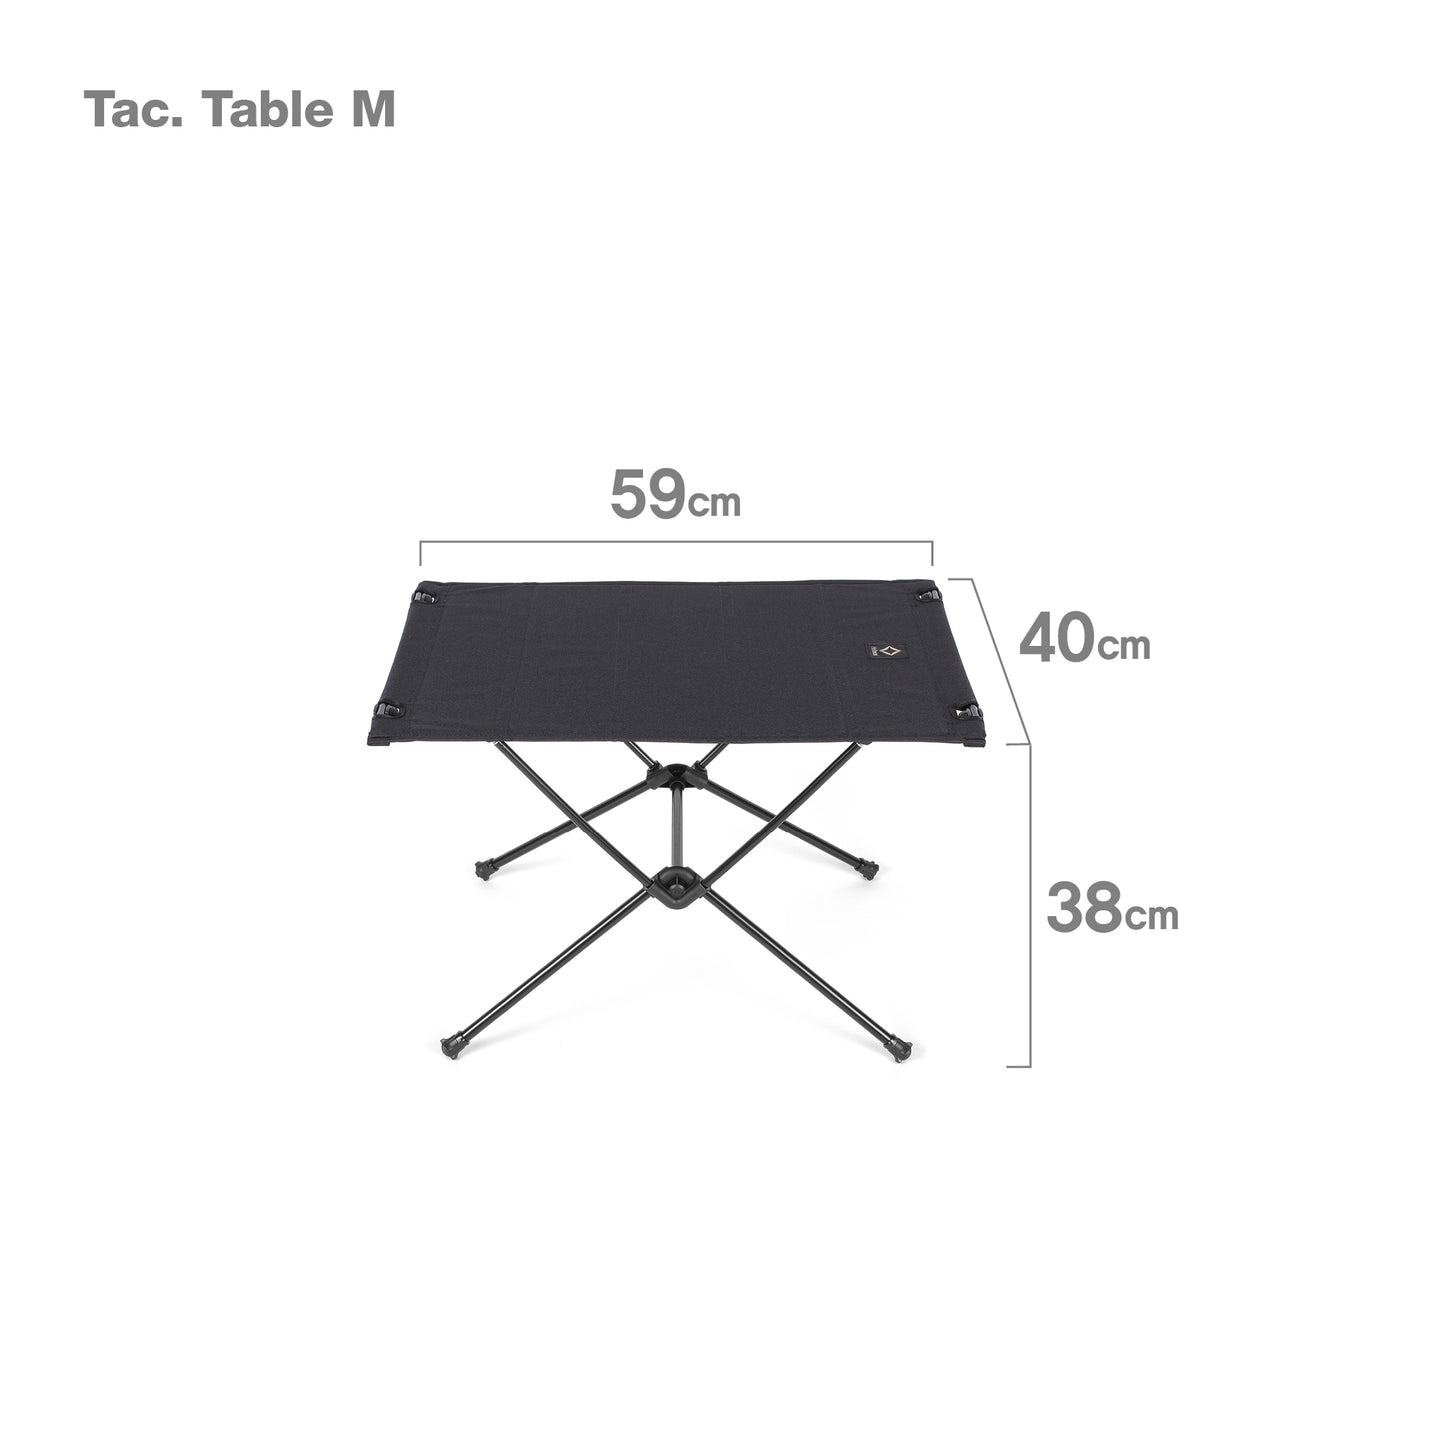 Tac. Table M - Black